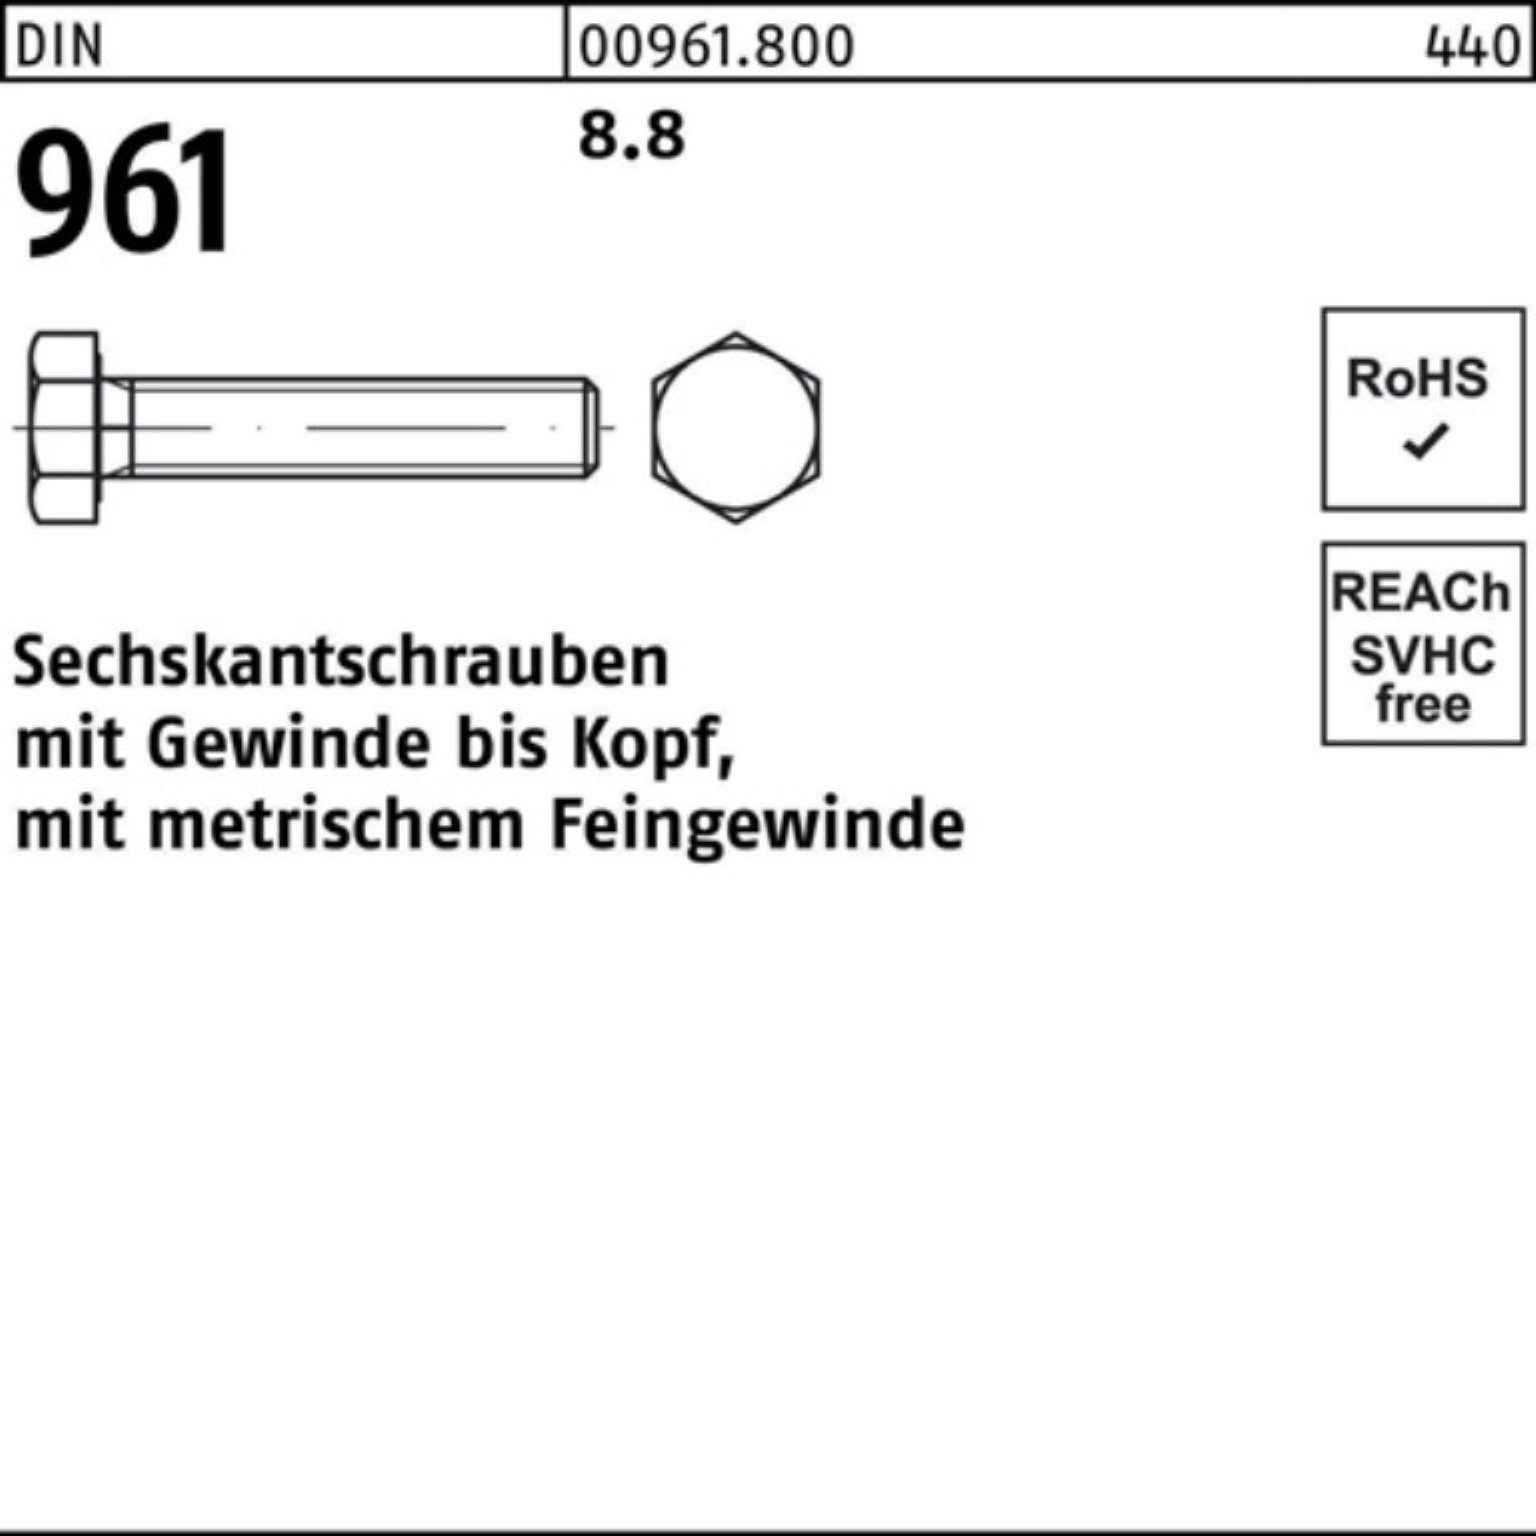 Stück Reyher VG Sechskantschraube 25 Pack 100er 961 8.8 DIN M18x1,5x100 DIN Sechskantschraube